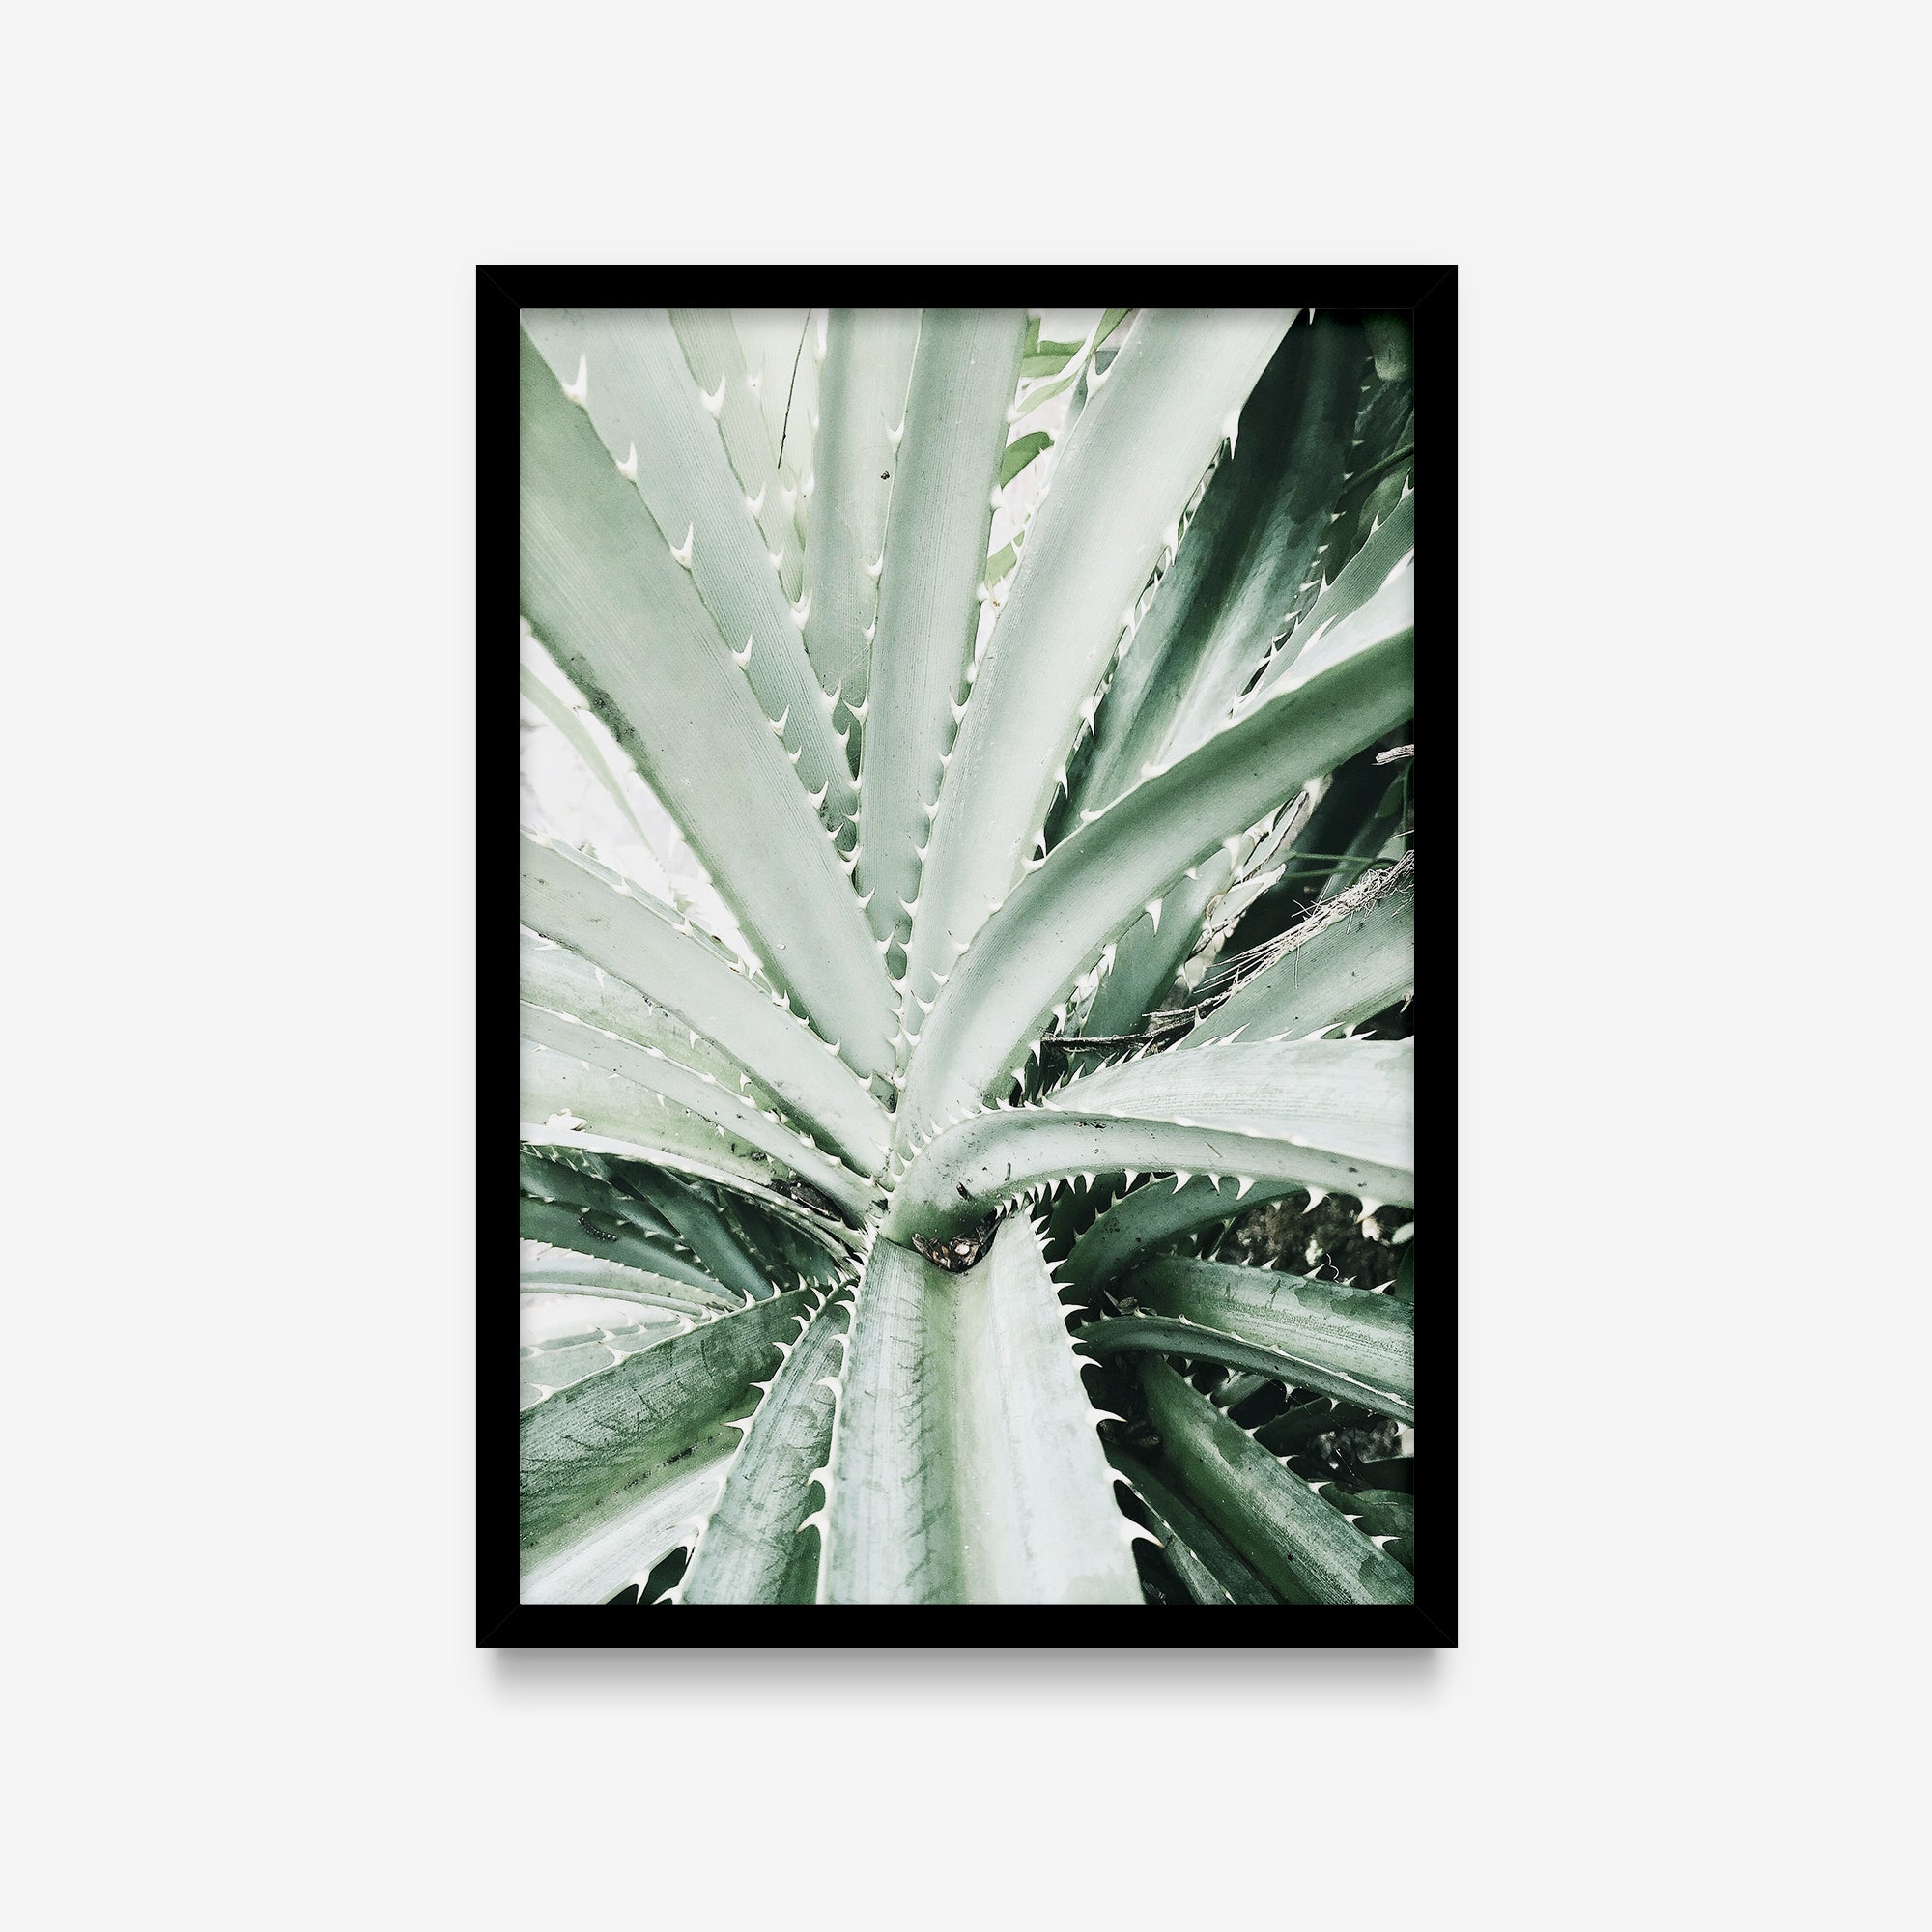 Plantas - Aloe detalhe